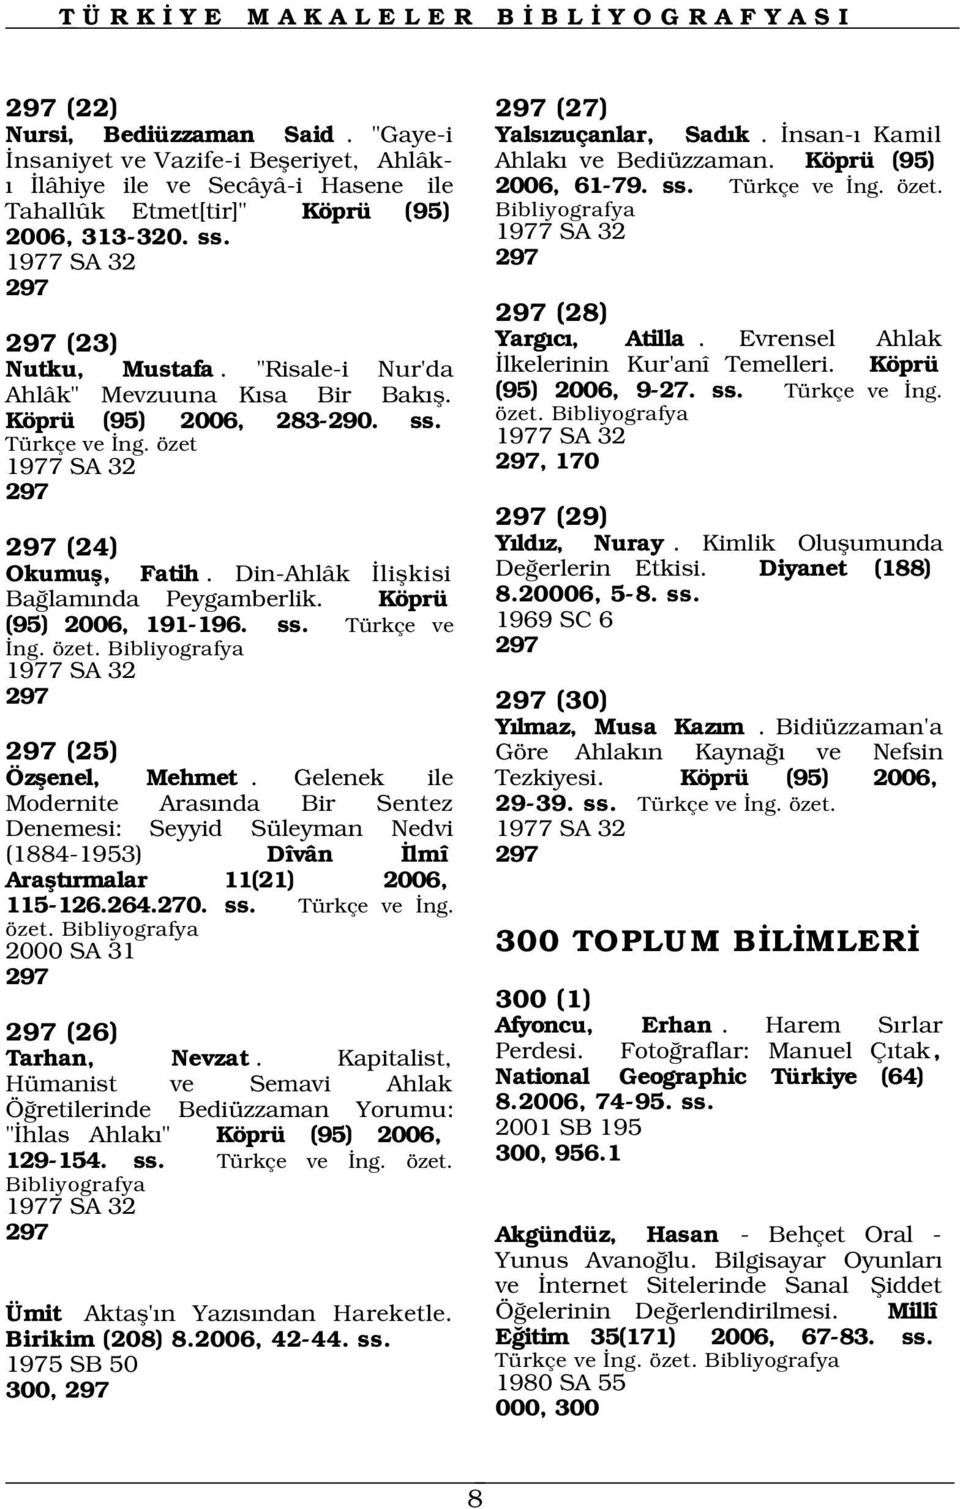 Din-Ahlâk liflkisi Ba lam nda Peygamberlik. Köprü (95) 2006, 191-196. ss. Türkçe ve ng. özet. 1977 SA 32 297 297 (30) 297 (25) Özflenel, Mehmet.